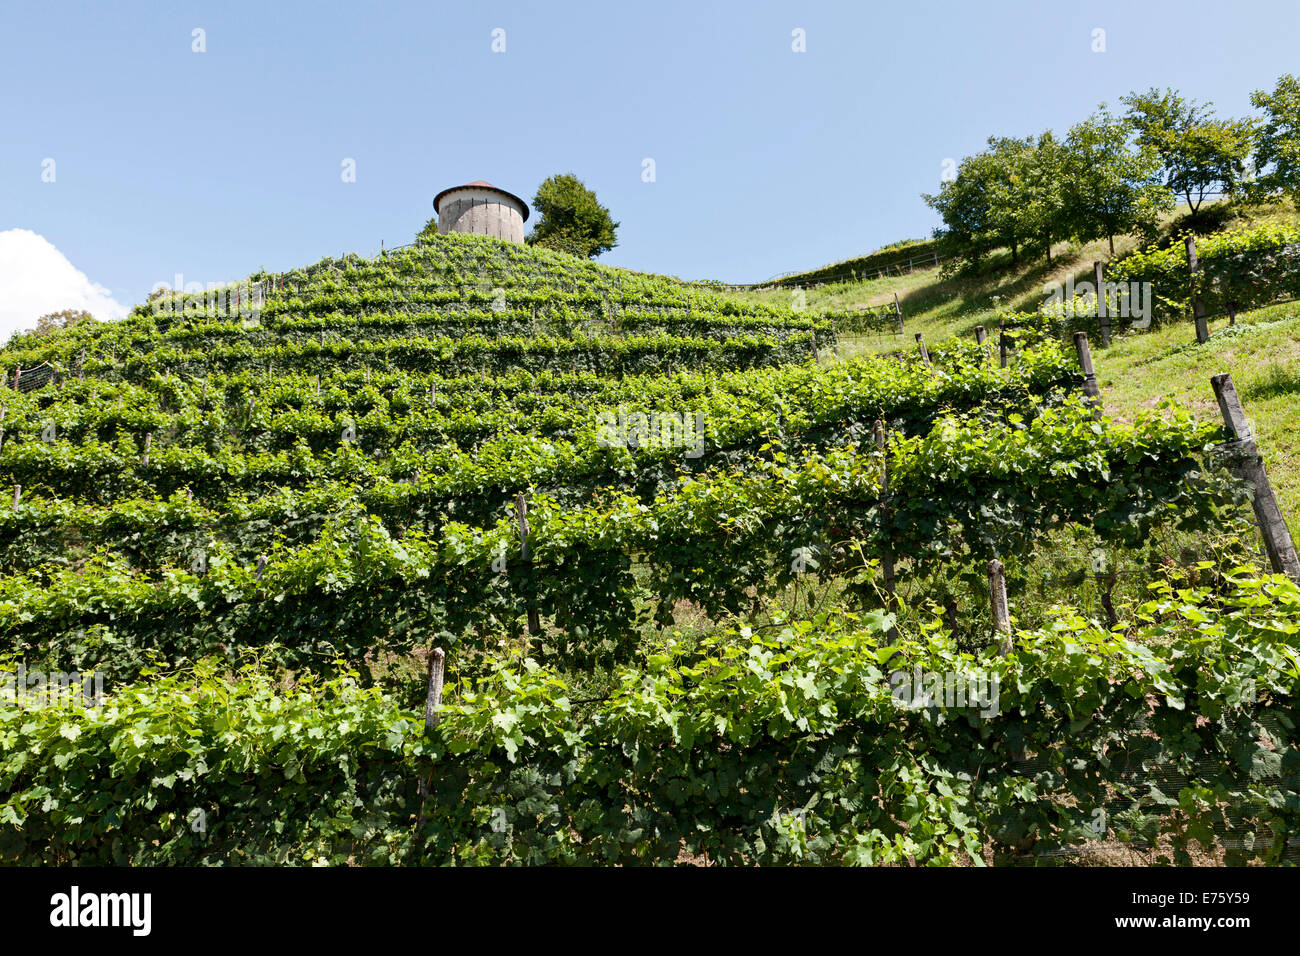 Vineyard with Hungerturm tower, near Montagna, Camorino, Bellinzona, Canton of Ticino, Switzerland Stock Photo